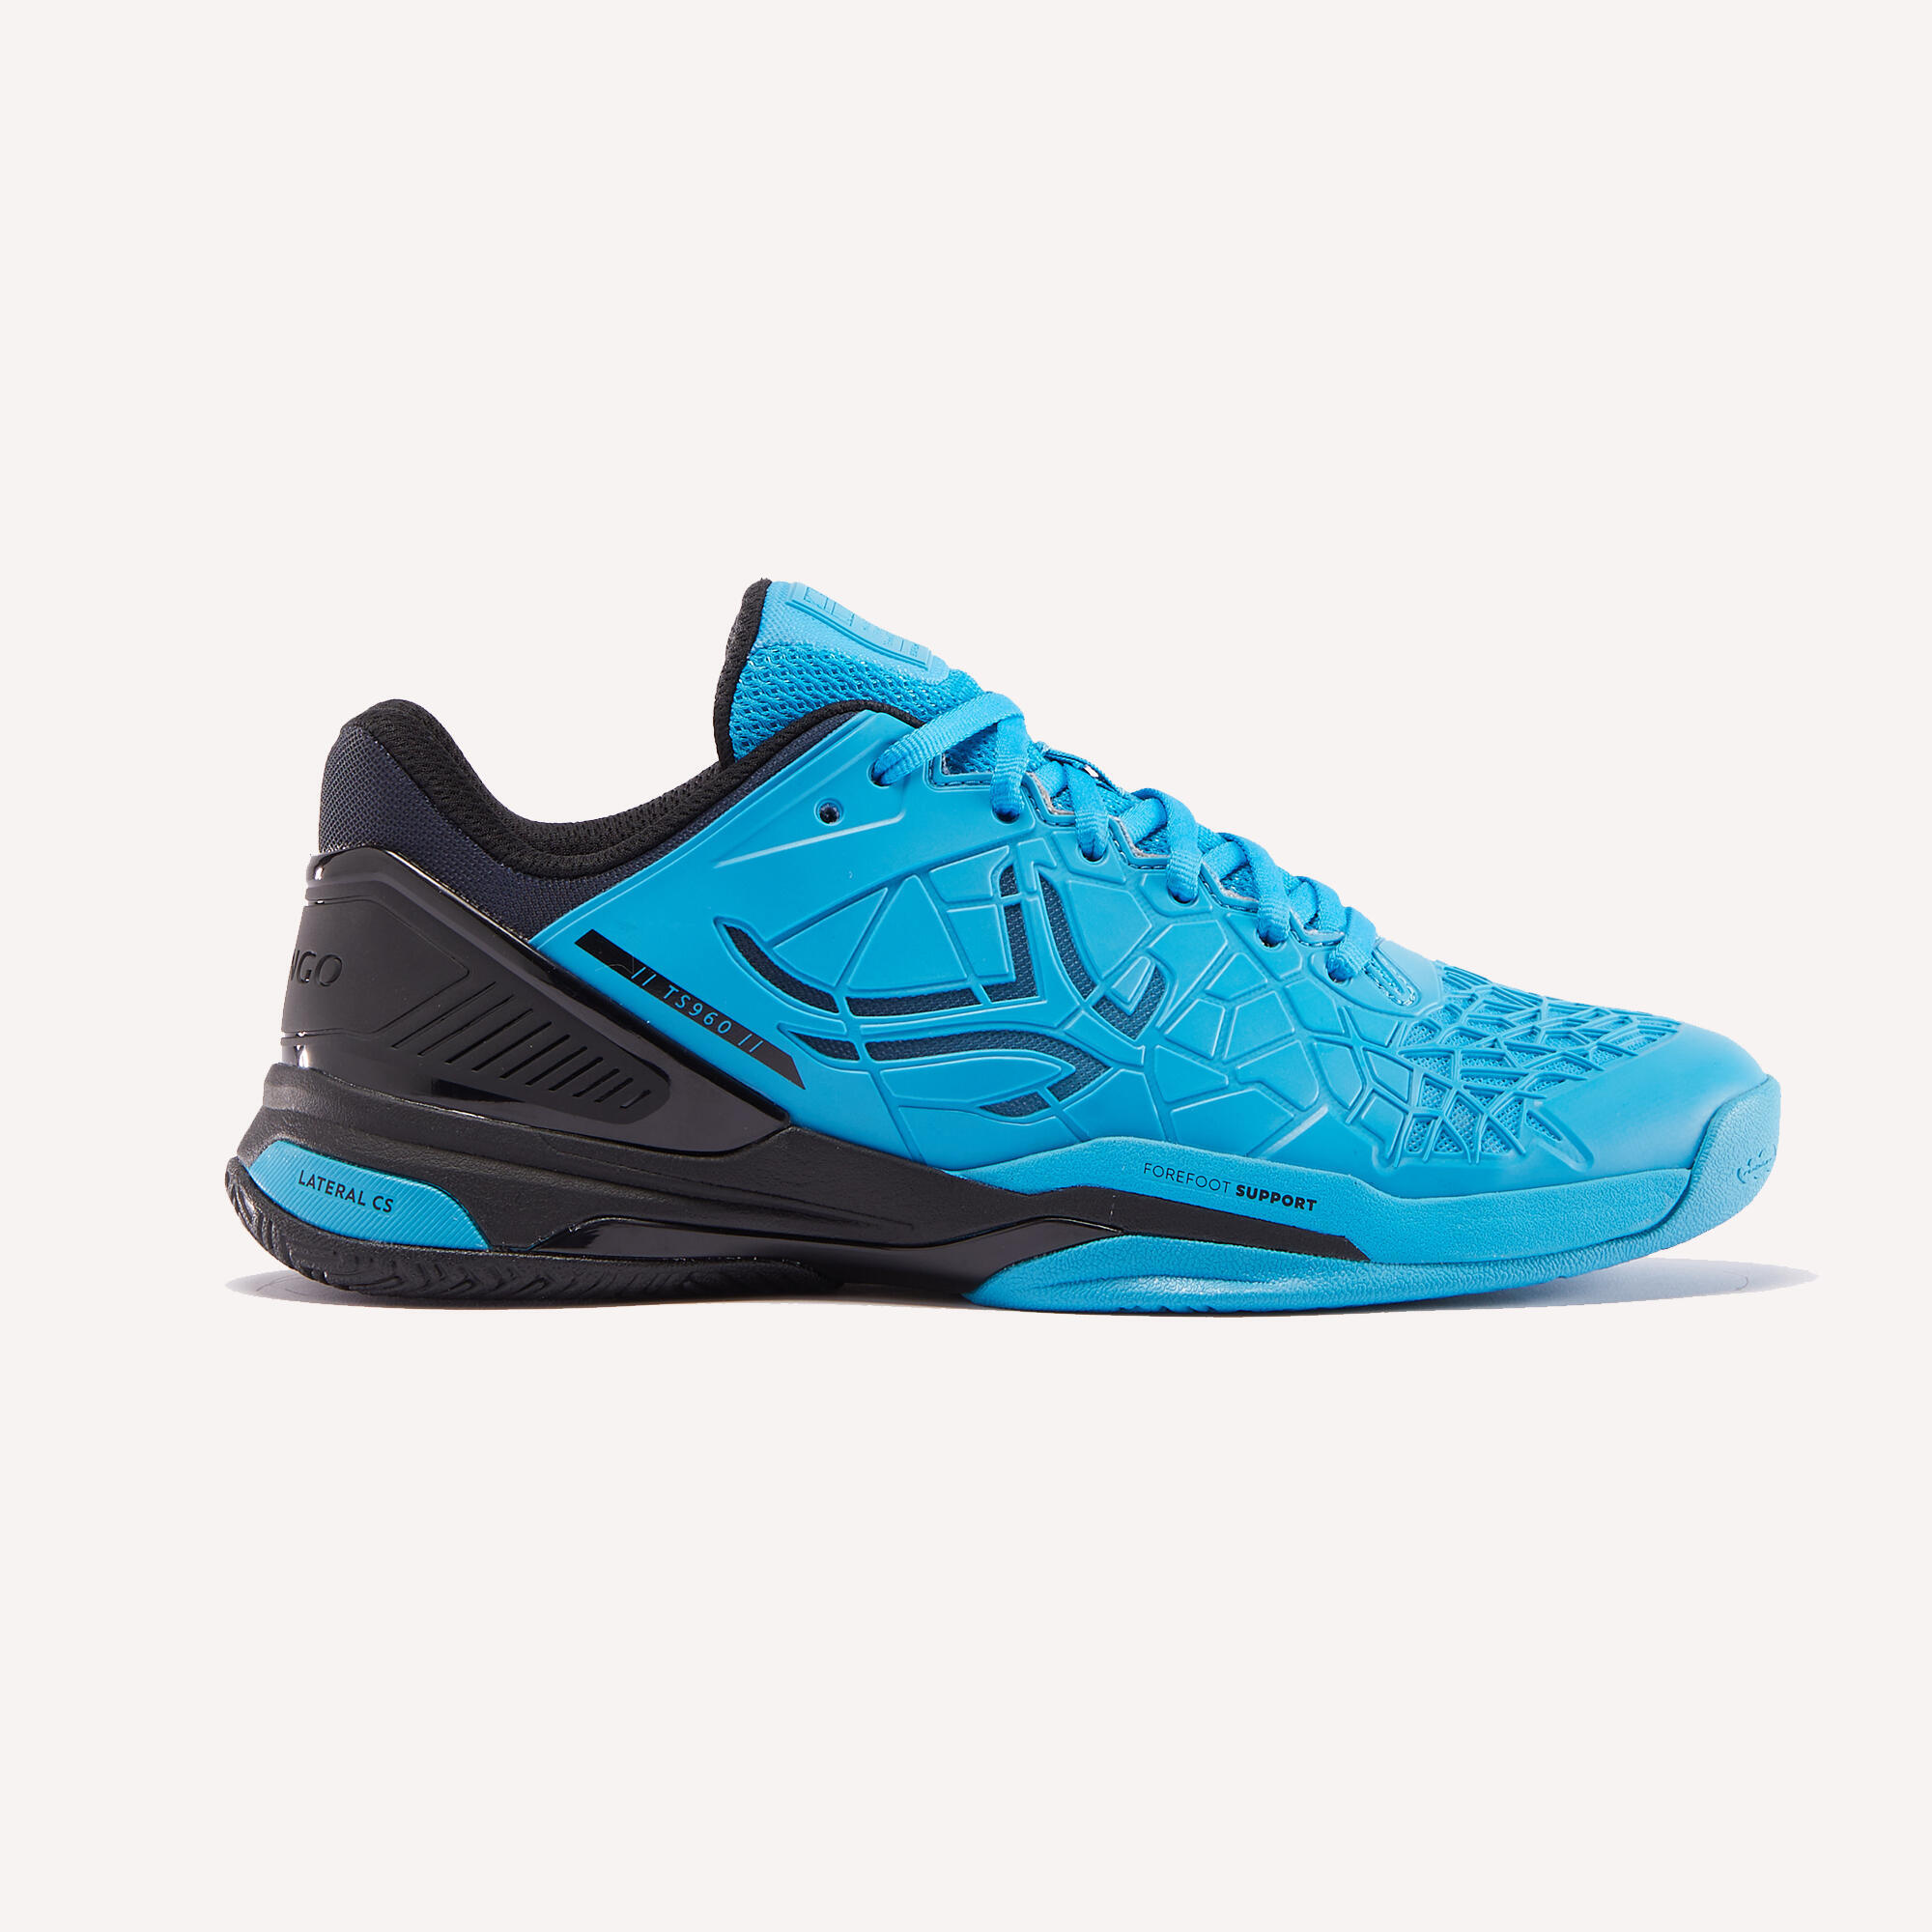 Men's Multicourt Tennis Shoes Strong Pro - Blue/Black 1/8